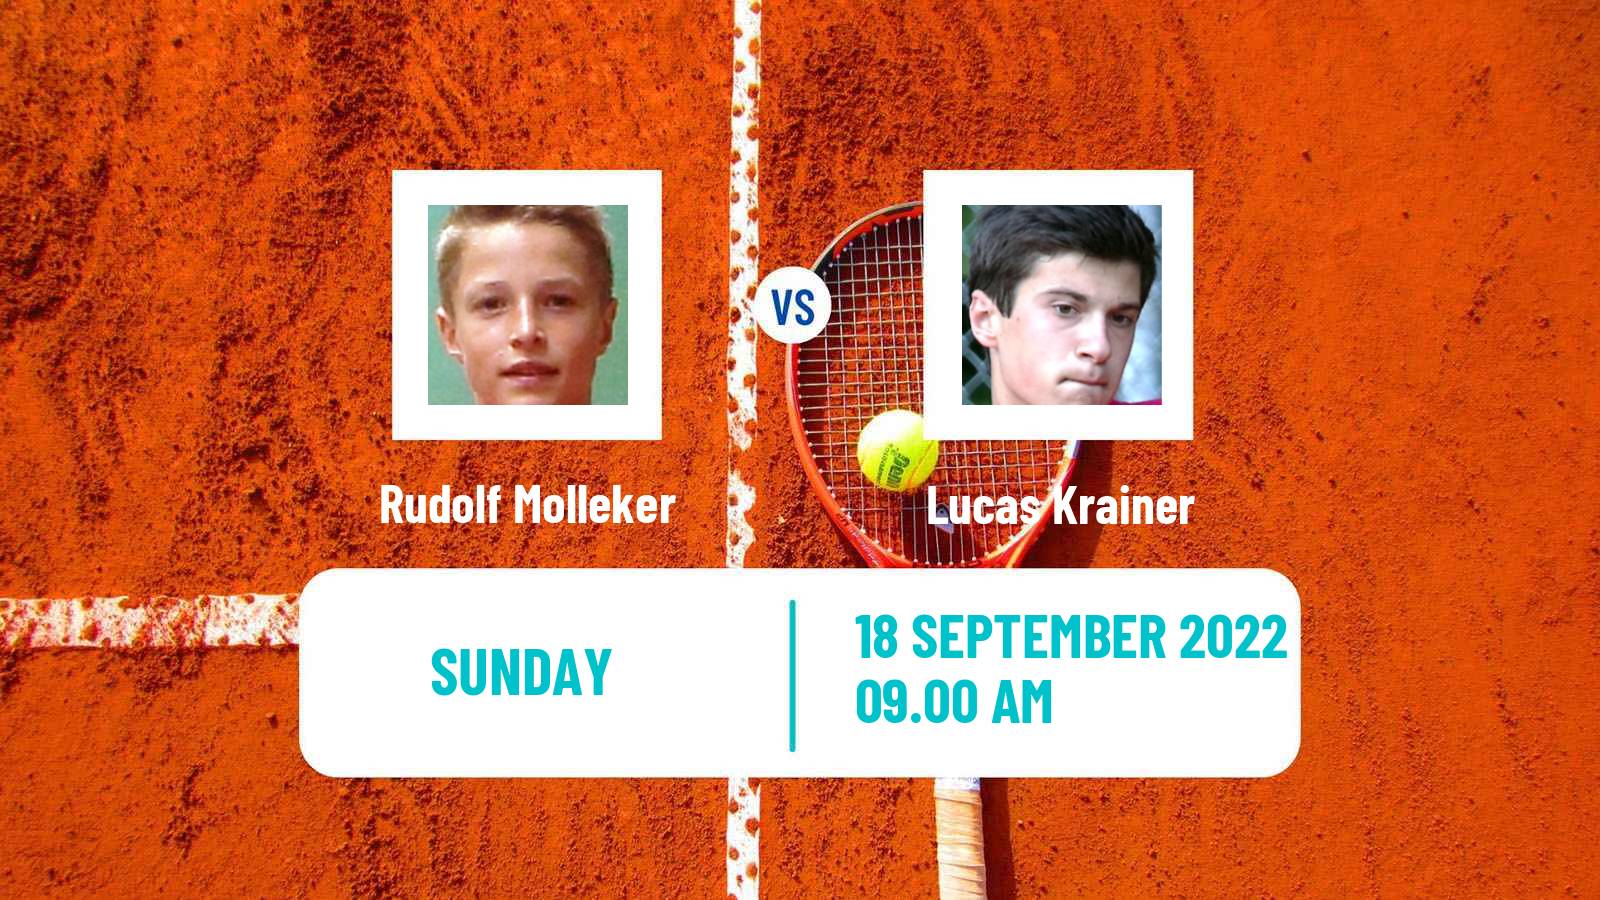 Tennis ATP Challenger Rudolf Molleker - Lucas Krainer